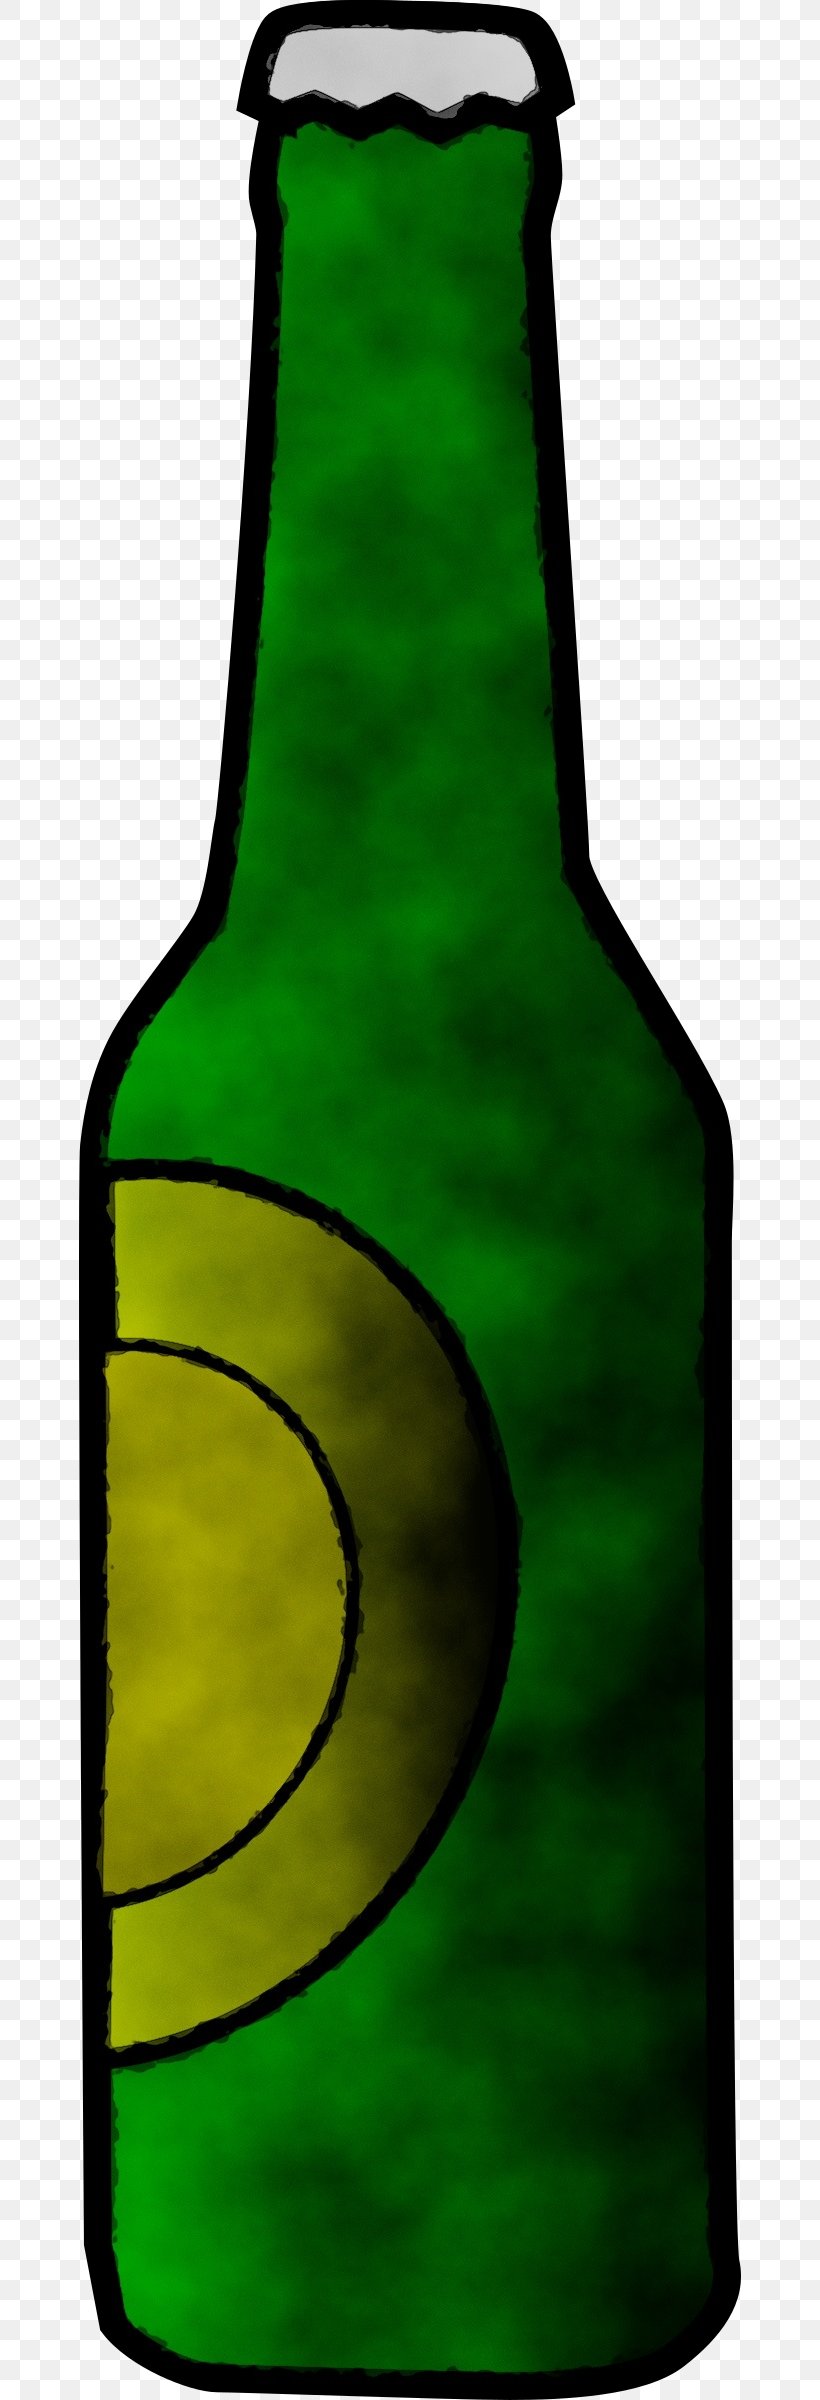 Bottle Green Beer Bottle Wine Bottle Glass Bottle, PNG, 662x2400px, Watercolor, Beer, Beer Bottle, Bottle, Drink Download Free